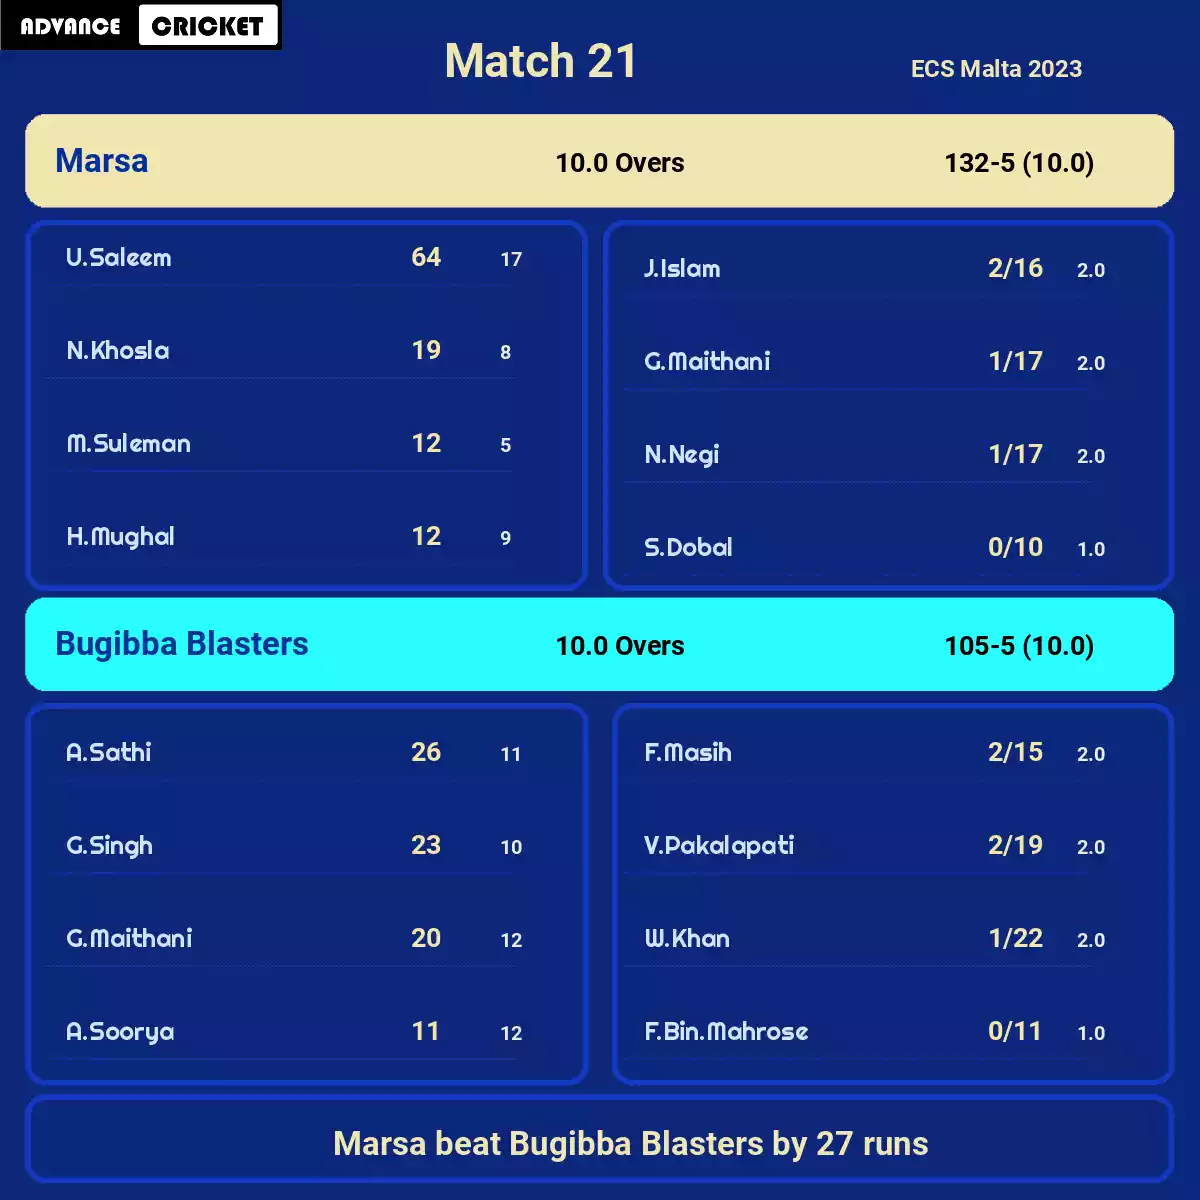 MAR vs BBL Match 21 ECS Malta 2023